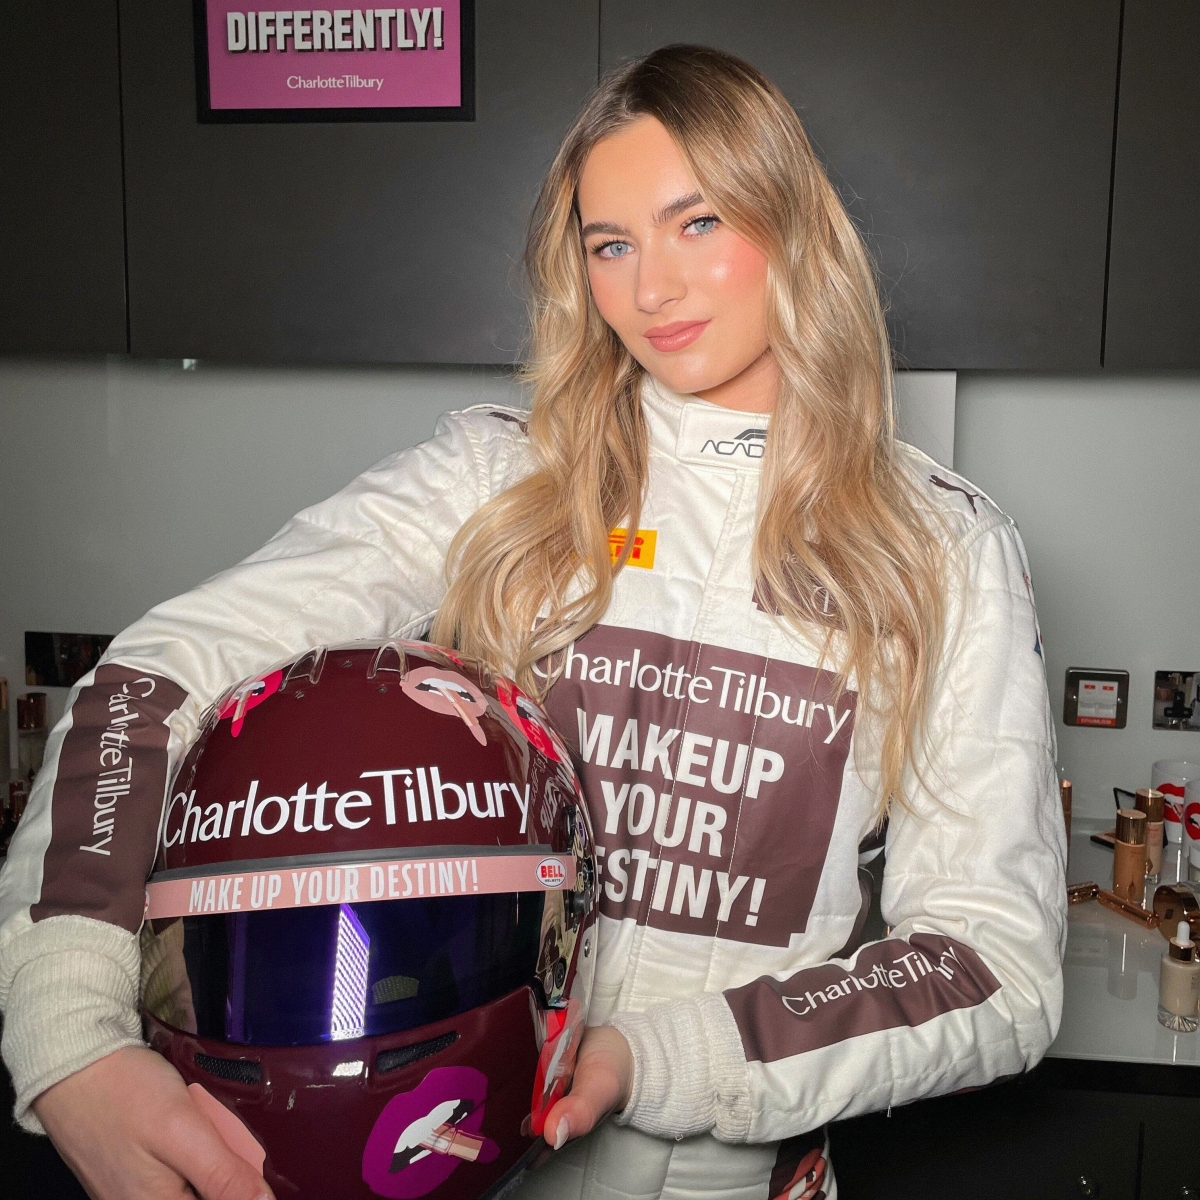 Lola Lovinfosse F1 Academy driver for Charlotte Tilbury